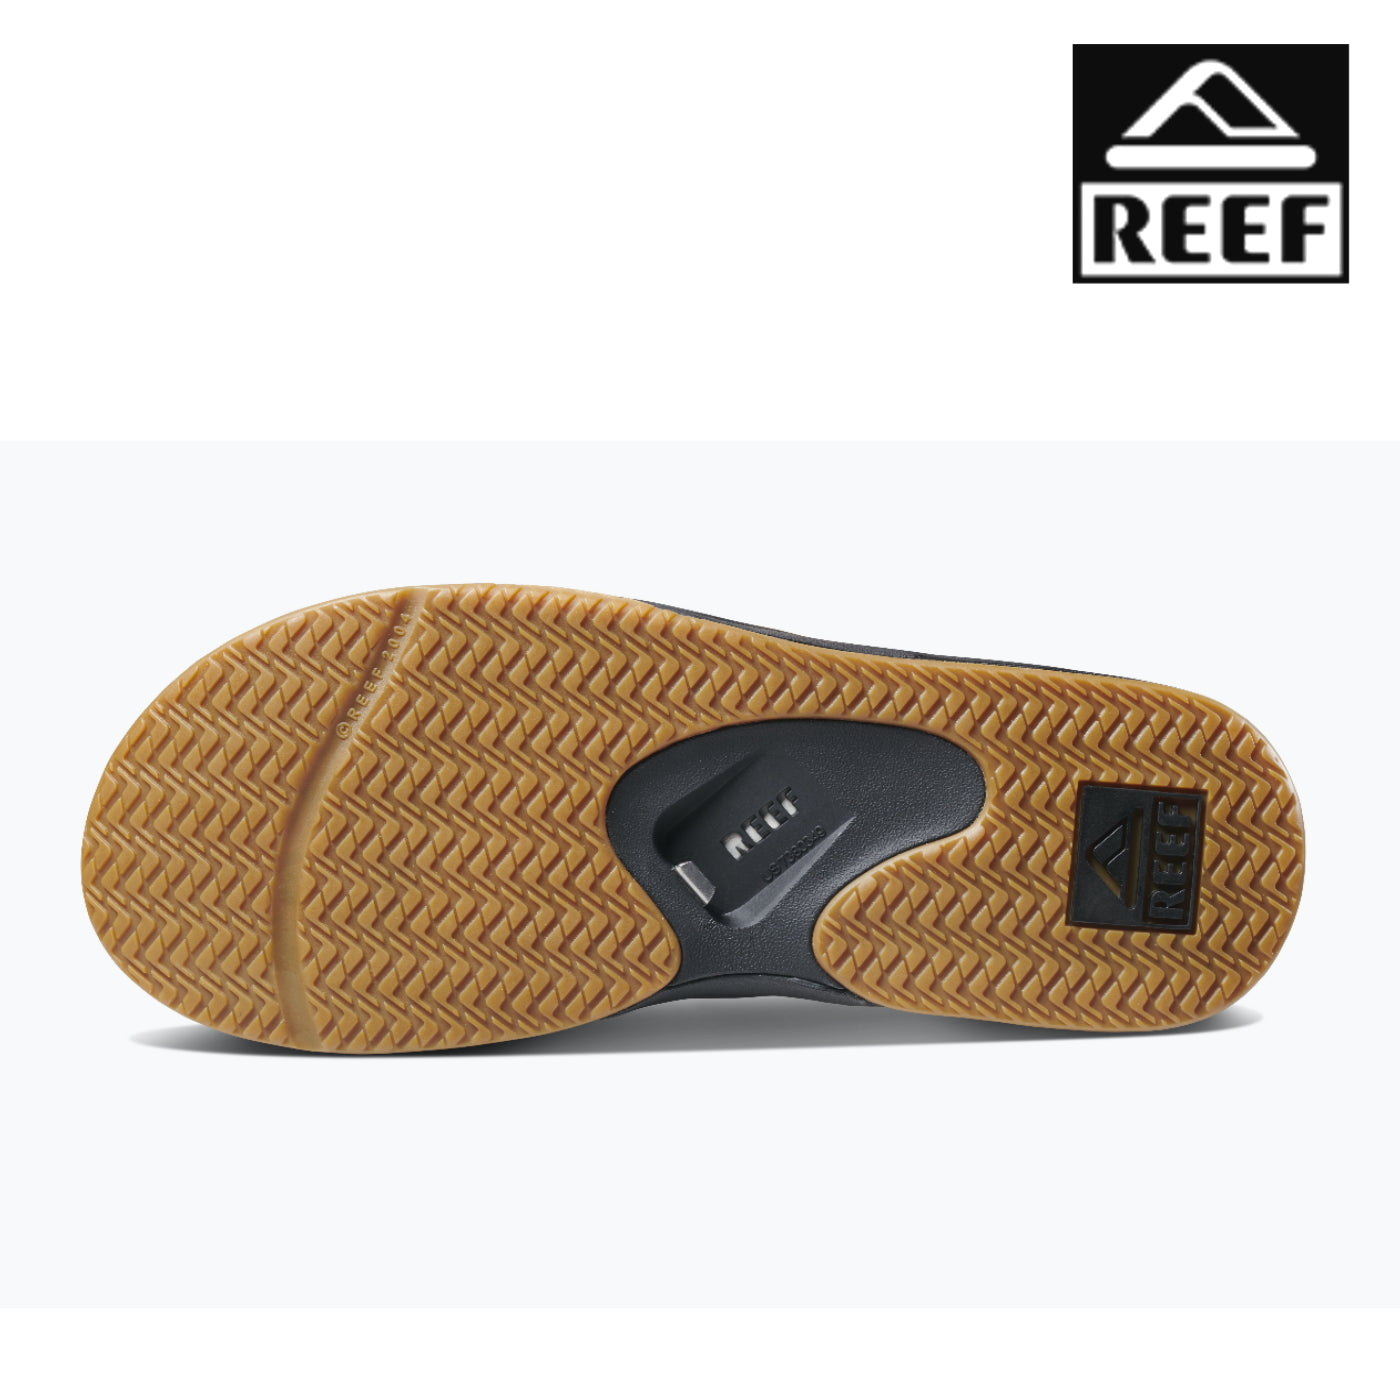 Reef Mick Fanning Men's Flip Flops